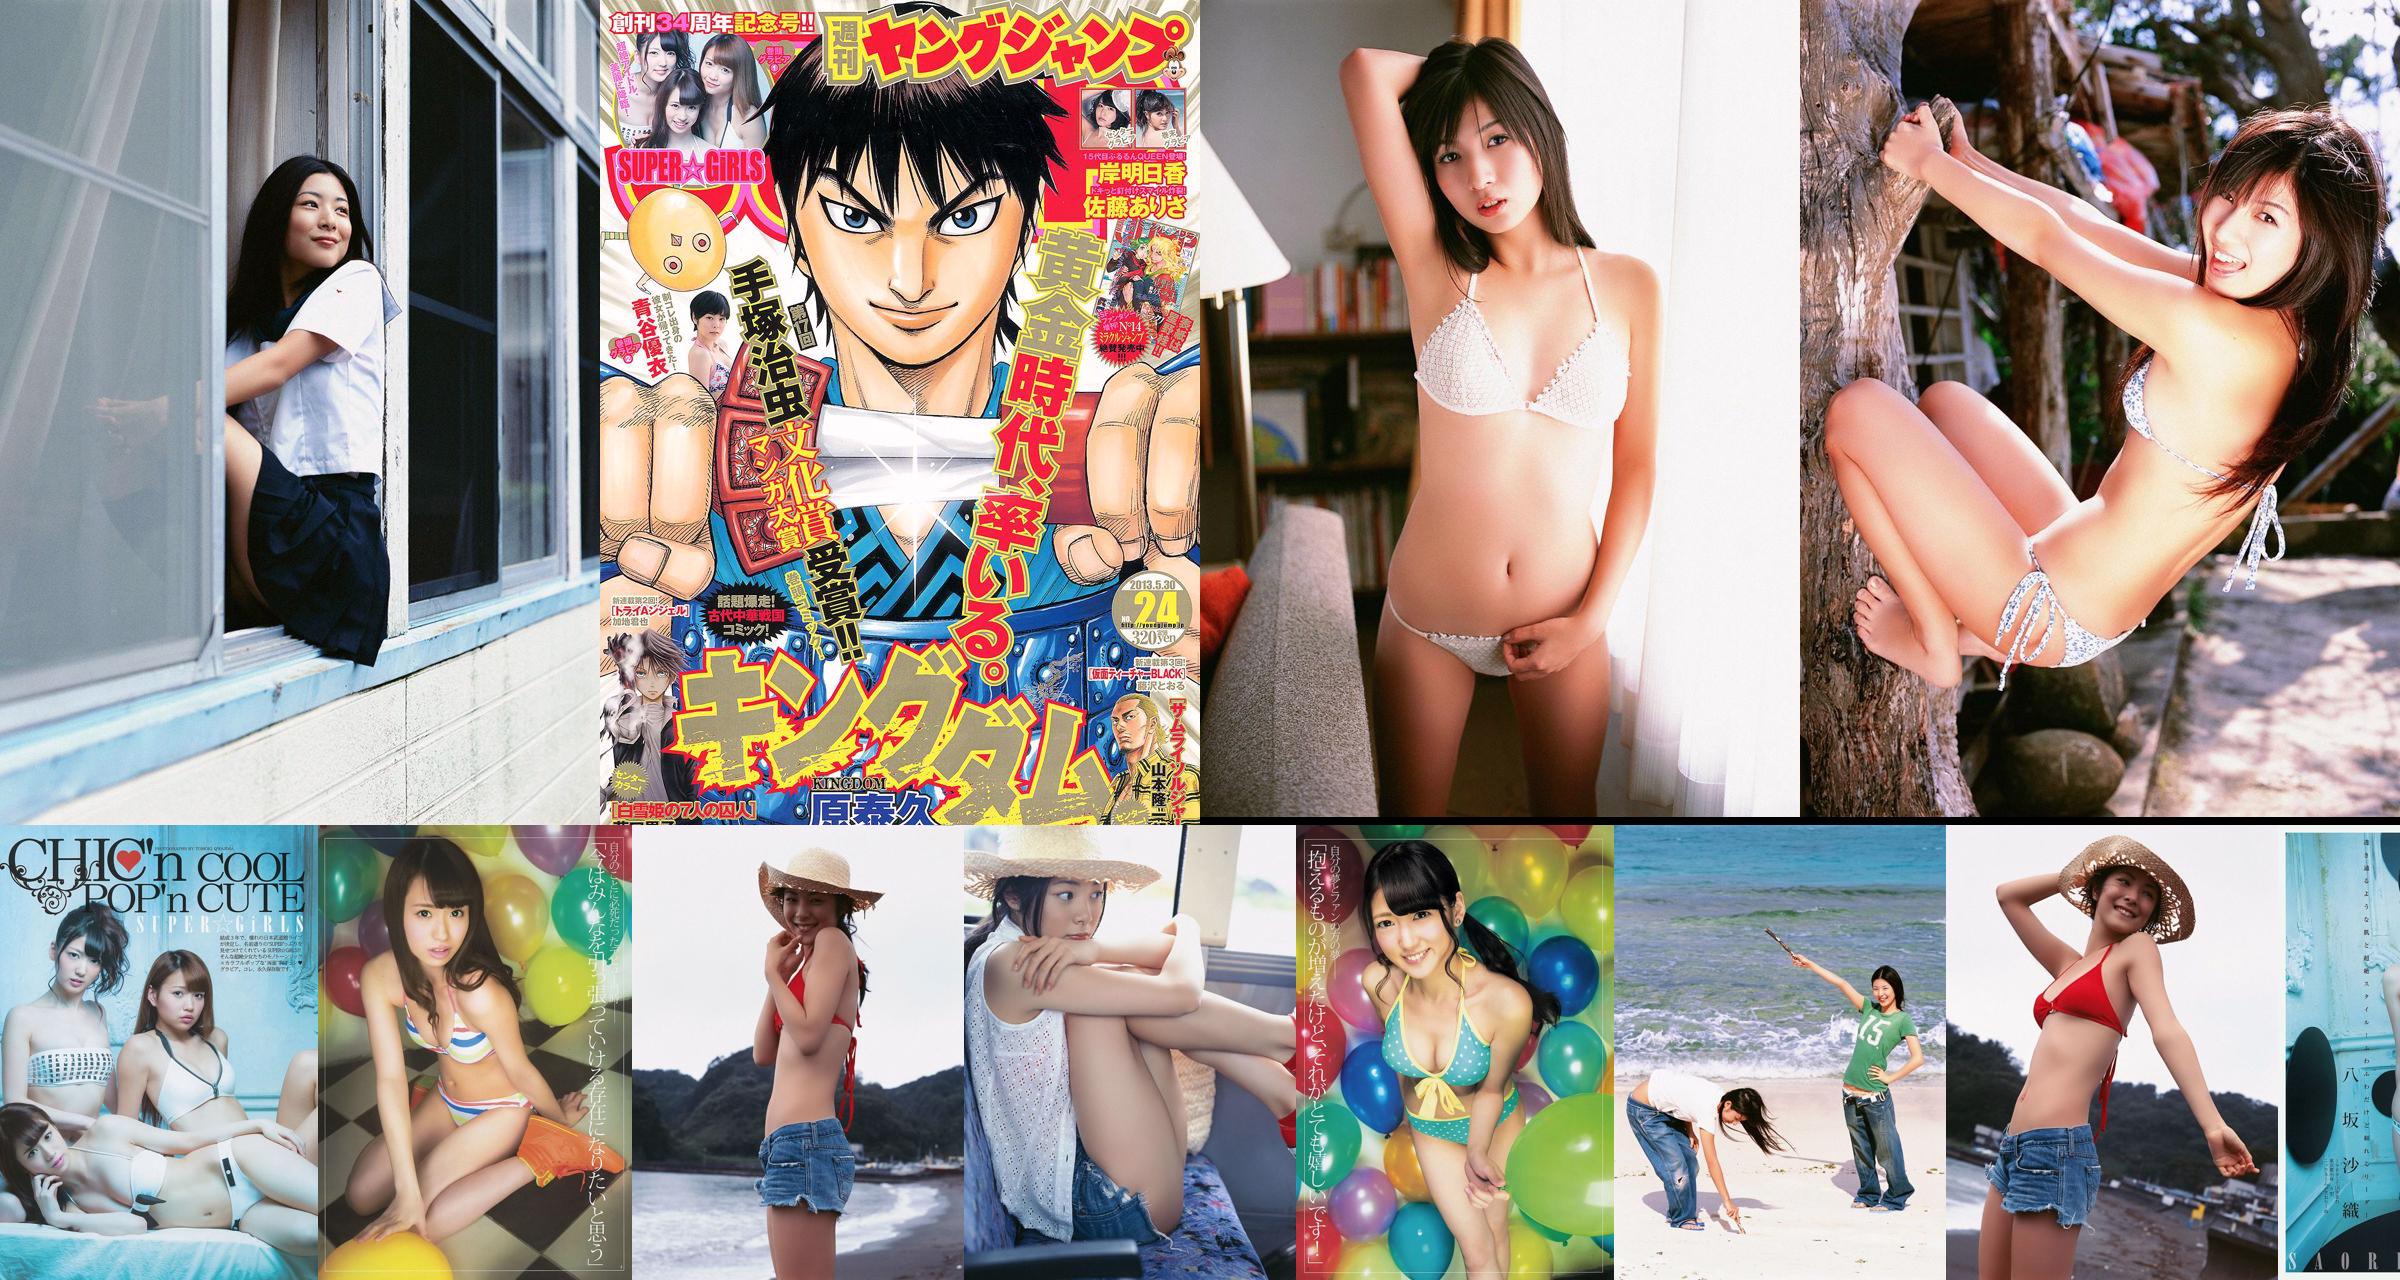 SUPER ☆ GiRLS Yui Aoya Asuka Kishi Arisa Sato [Weekly Young Jump] 2013 No.24 Photograph No.d021aa Page 1